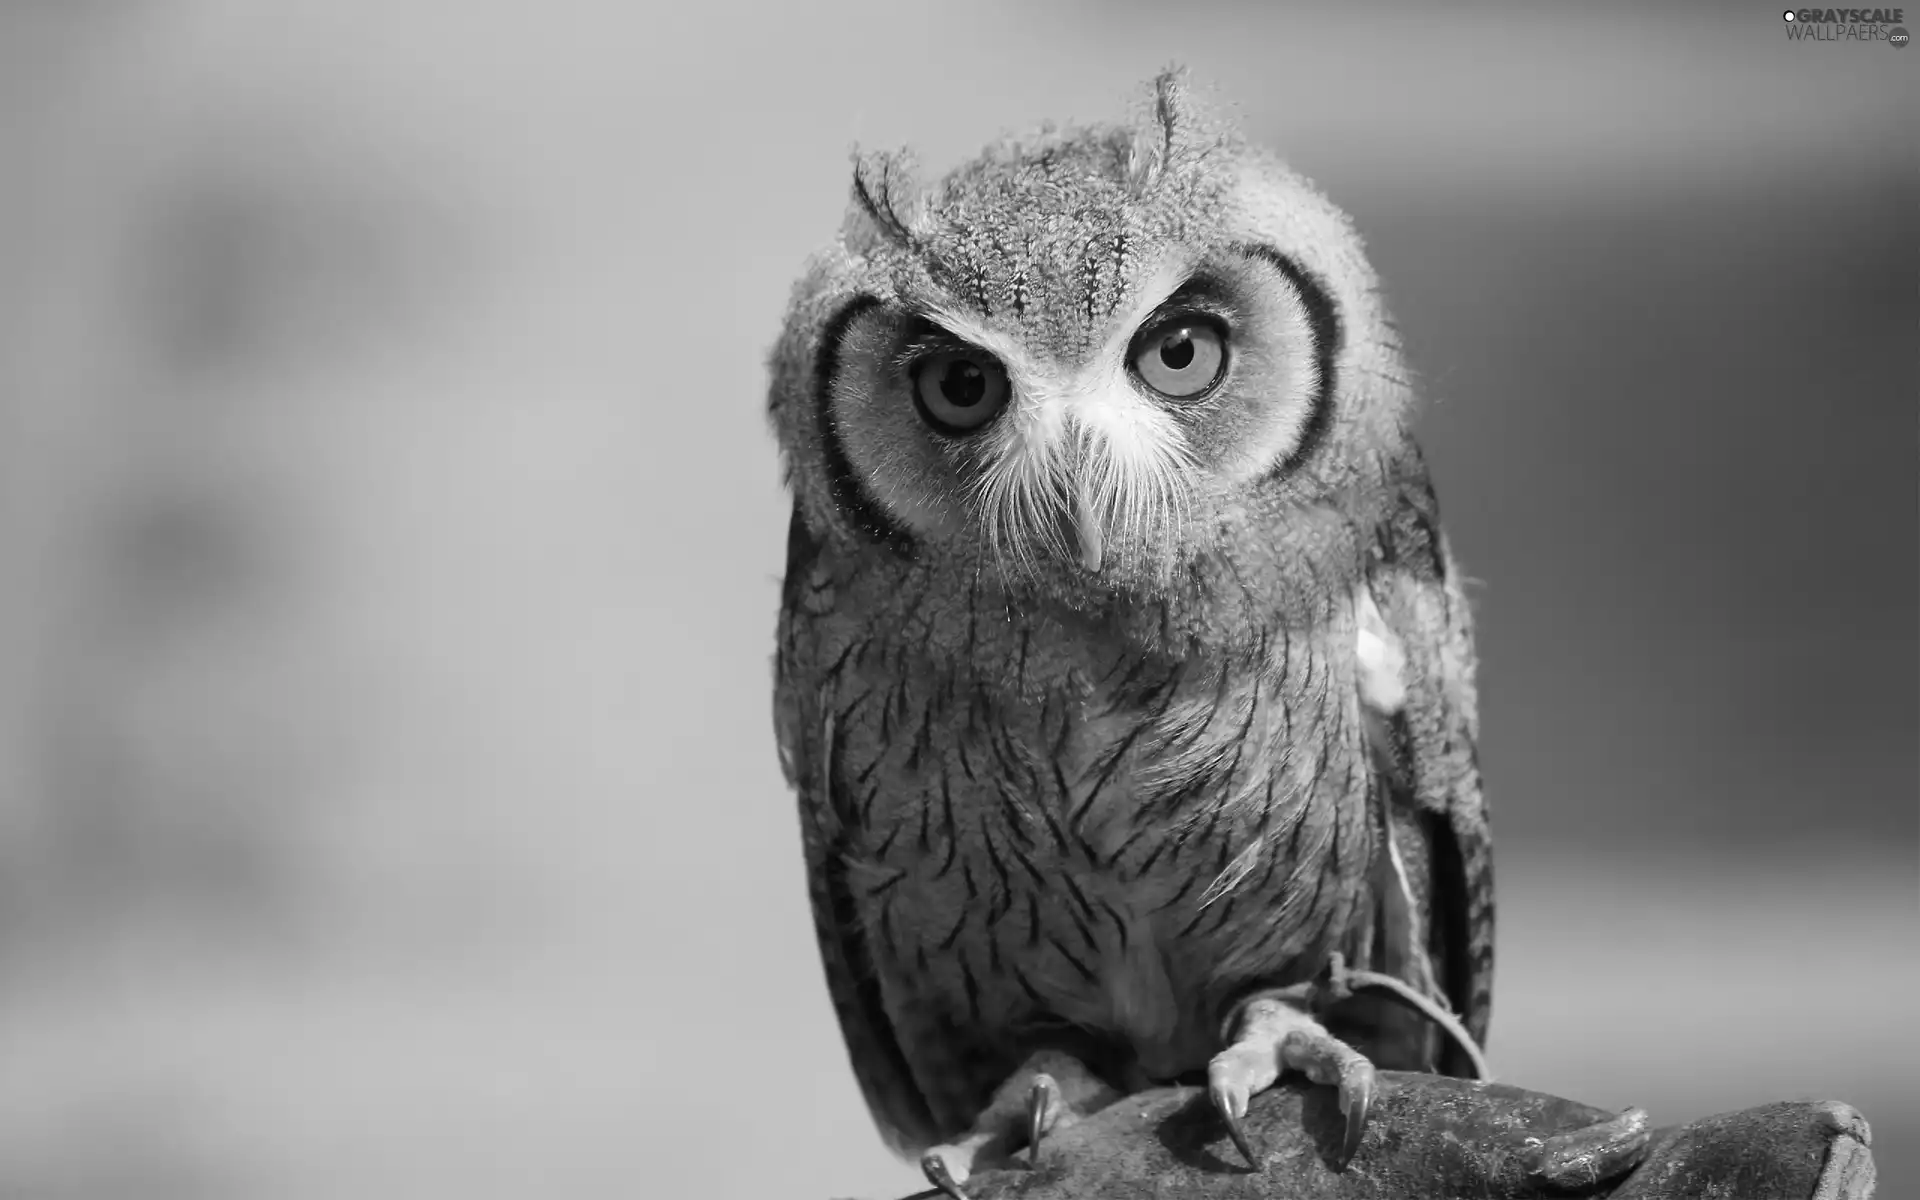 owl, Eyes